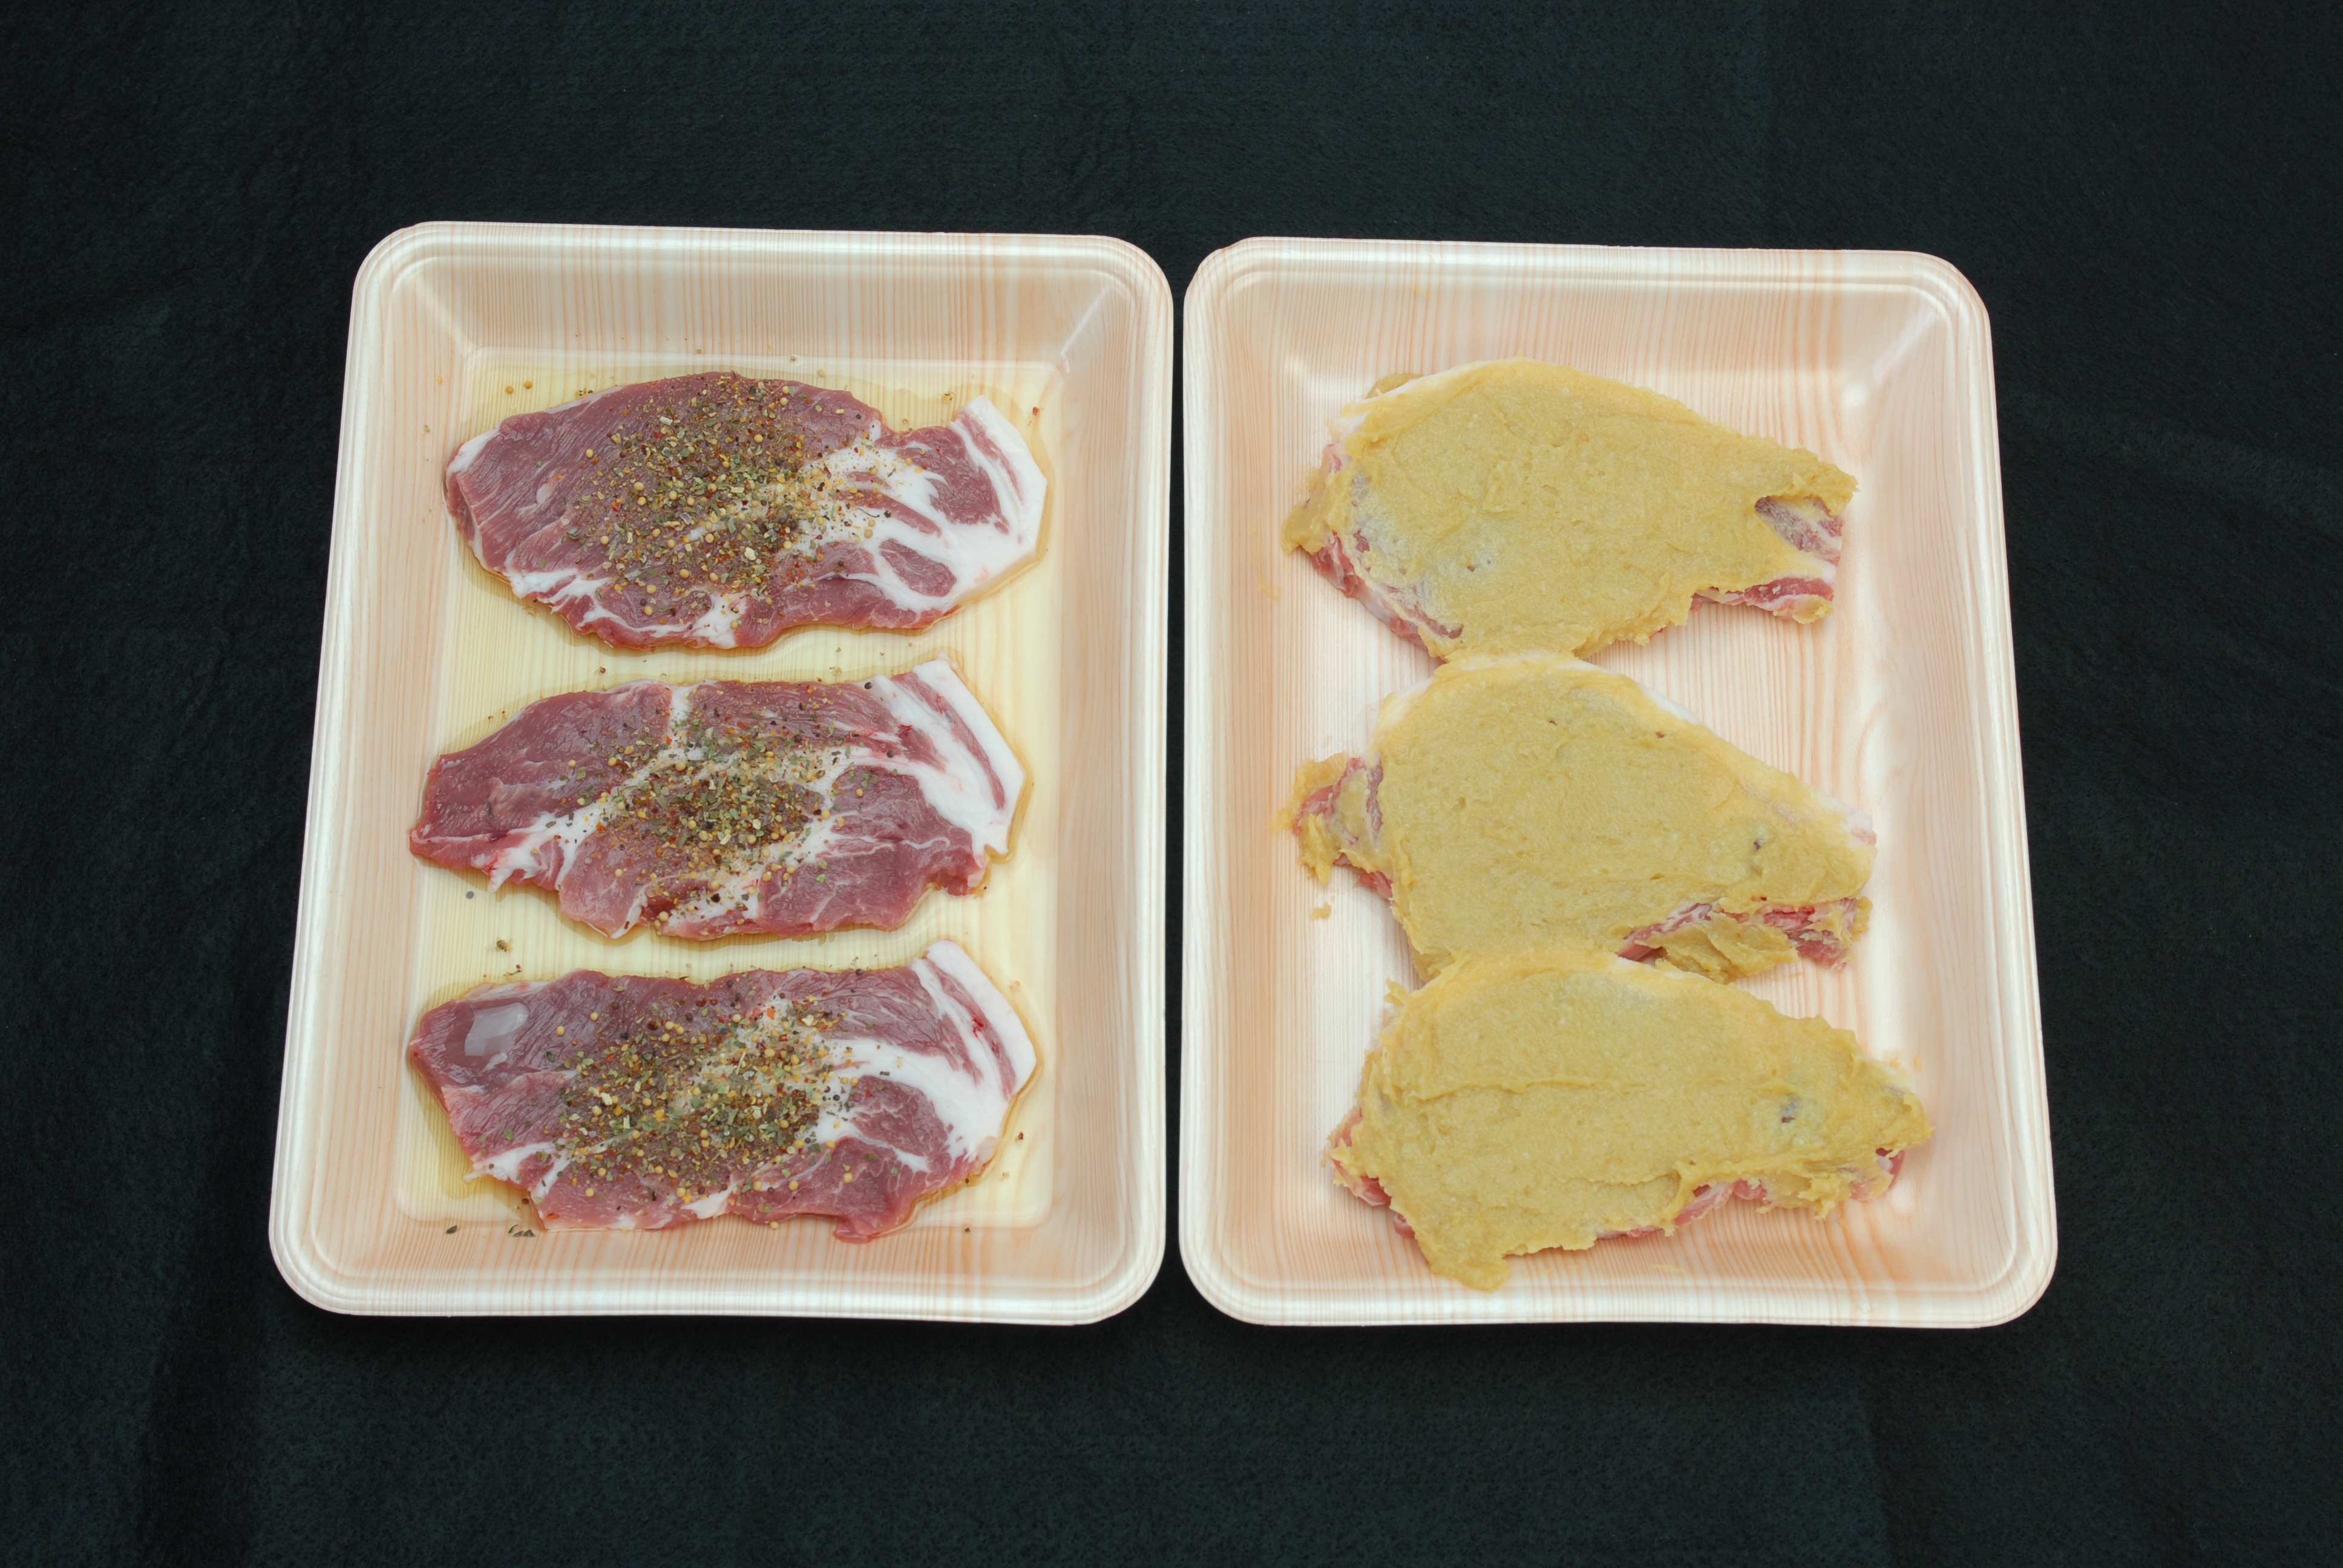 香川県産豚ロース肉のみそ漬けと肩ロース肉のオリーブオイル漬けセットの特産品画像